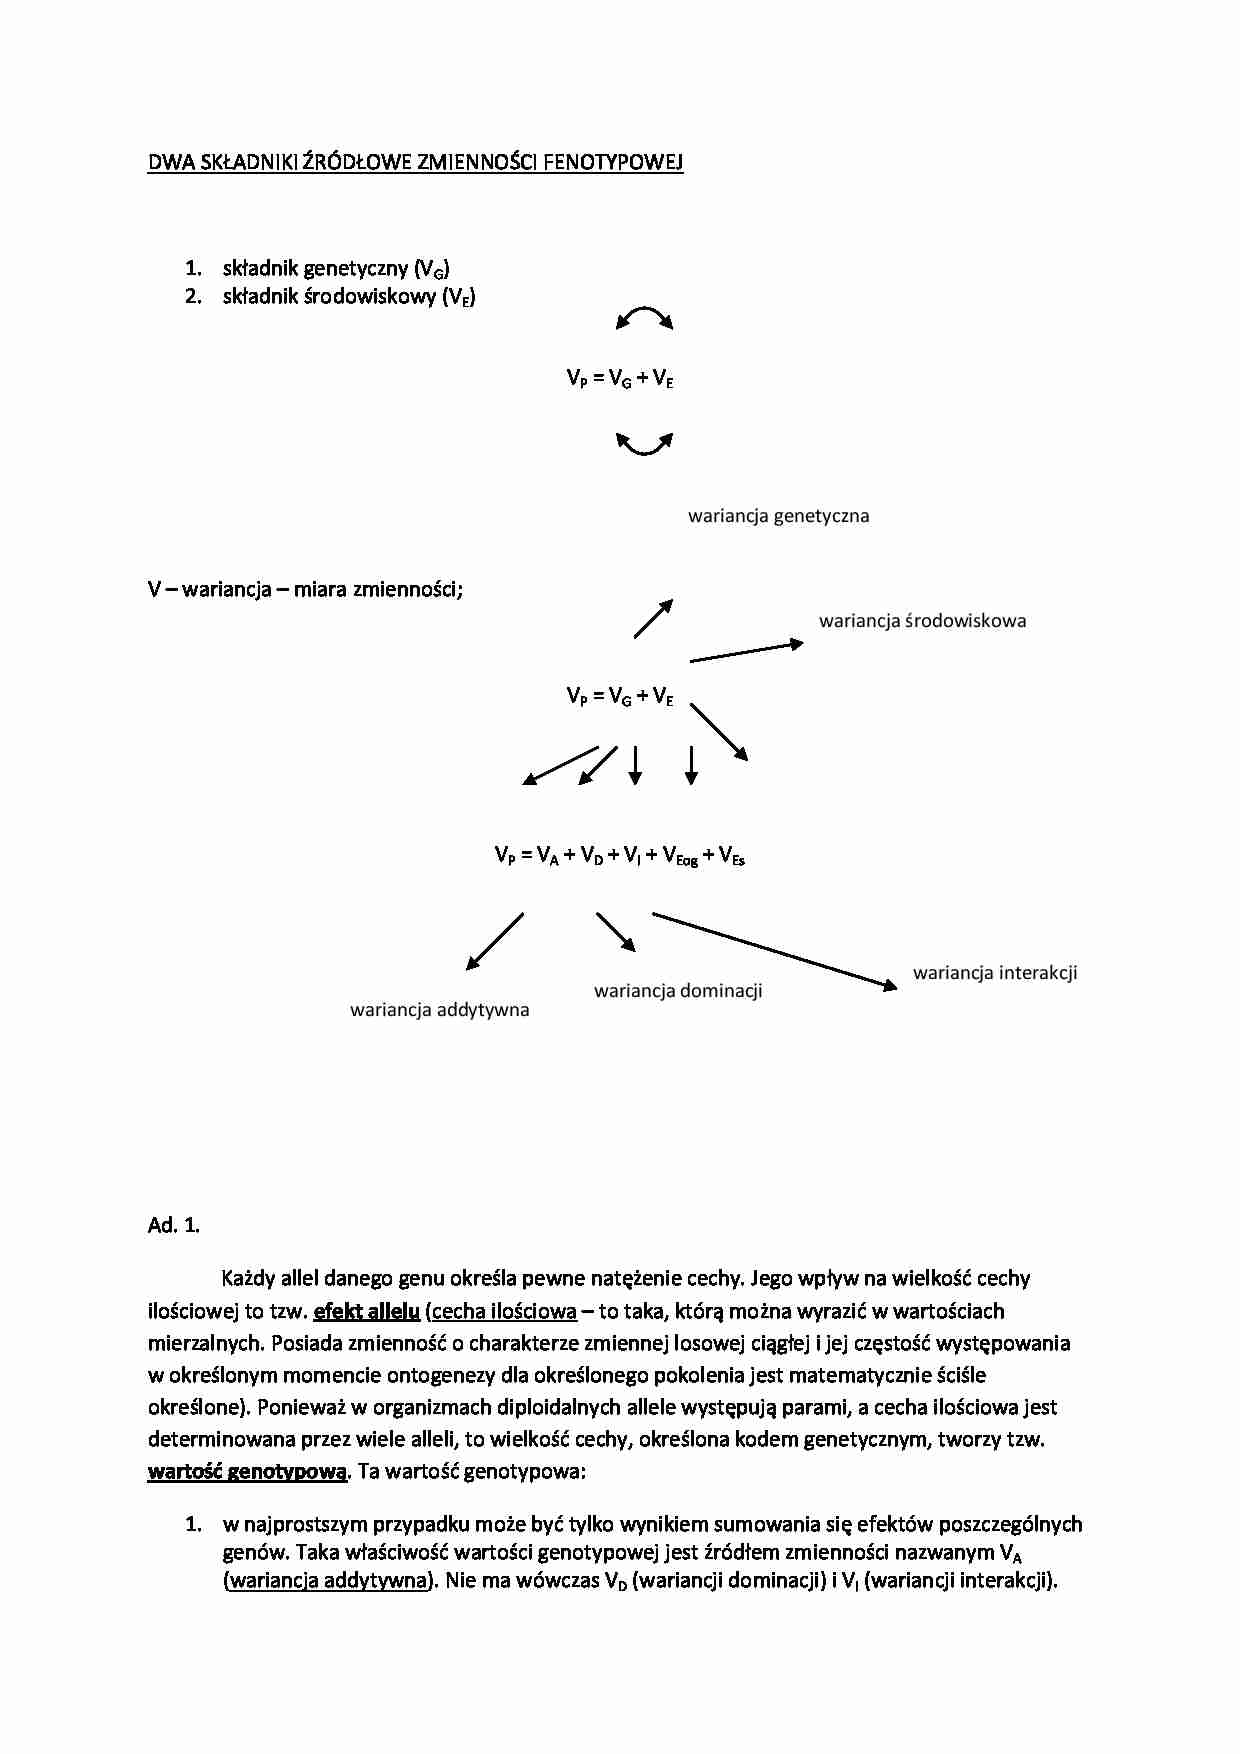 Składniki źródłowe zmienności fenetypowej - opis - strona 1